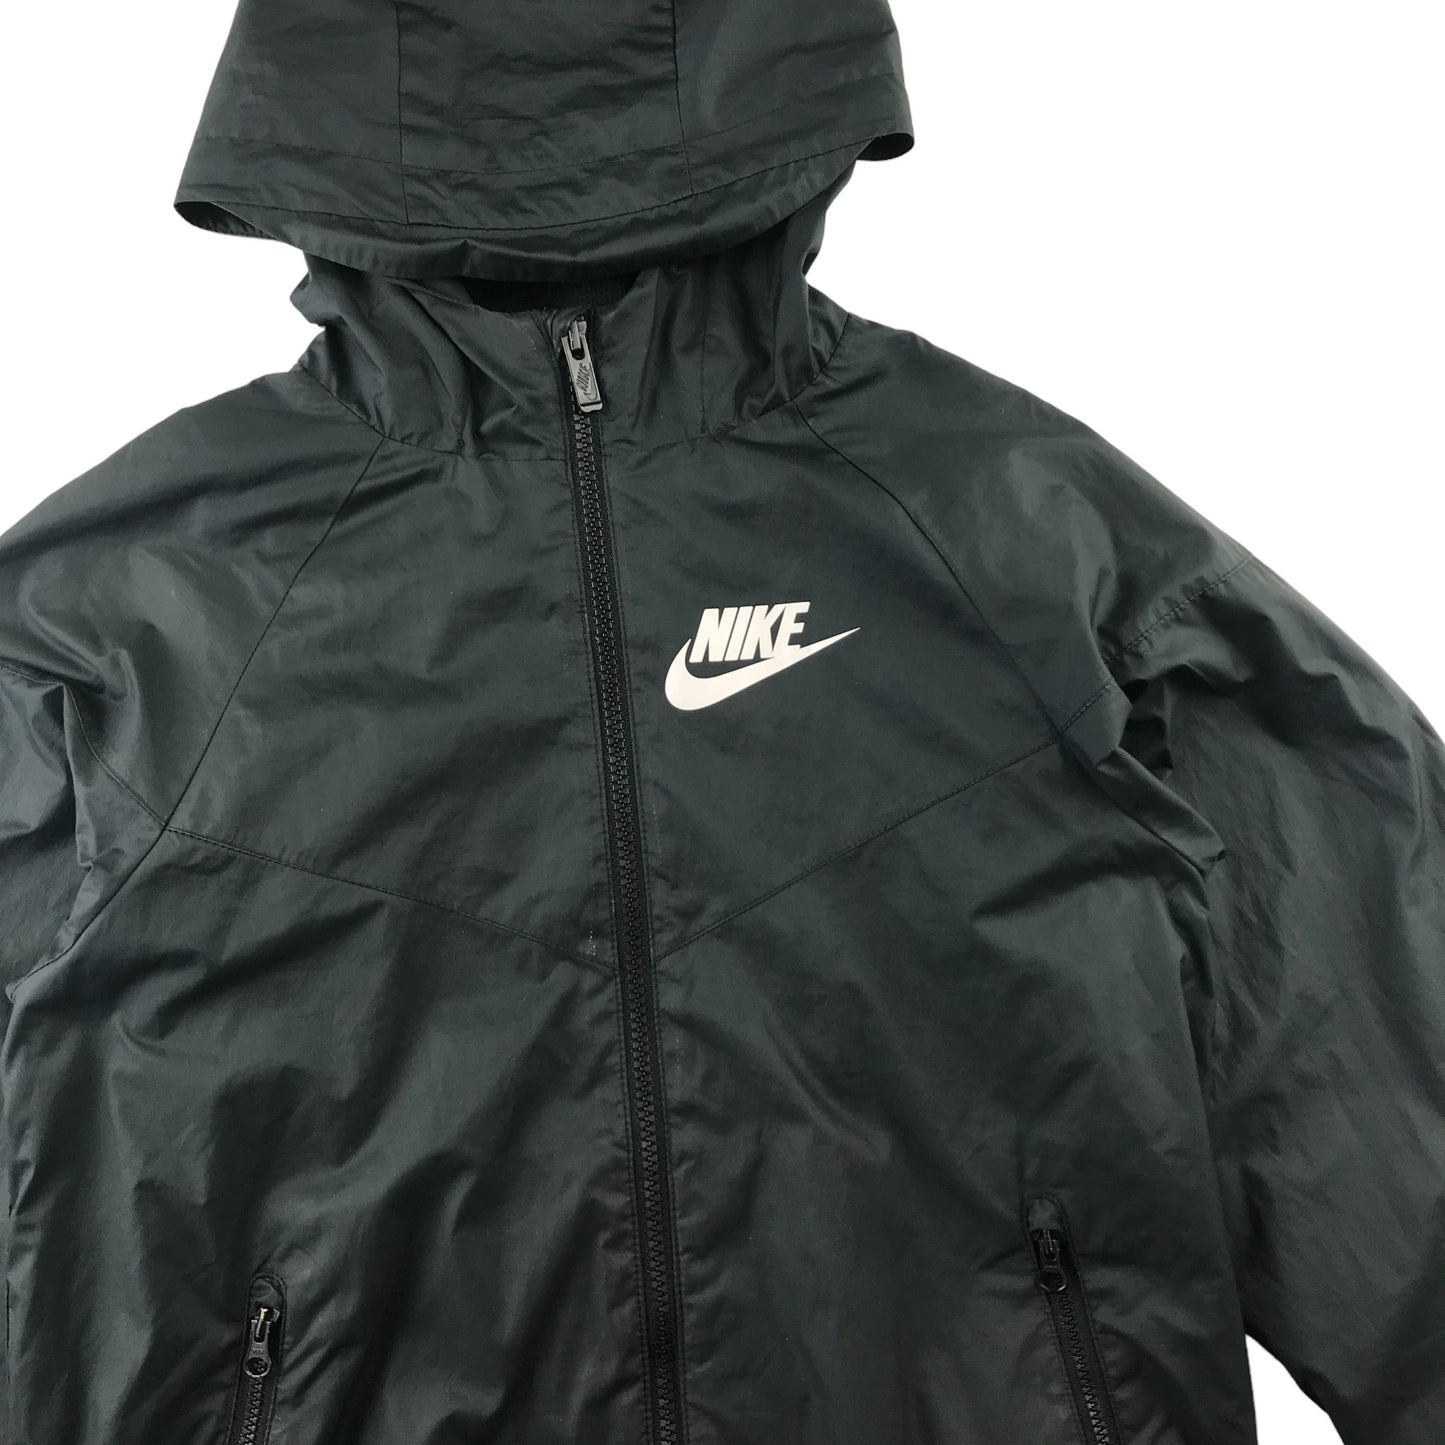 Nike light jacket 10 years black plain with white logo